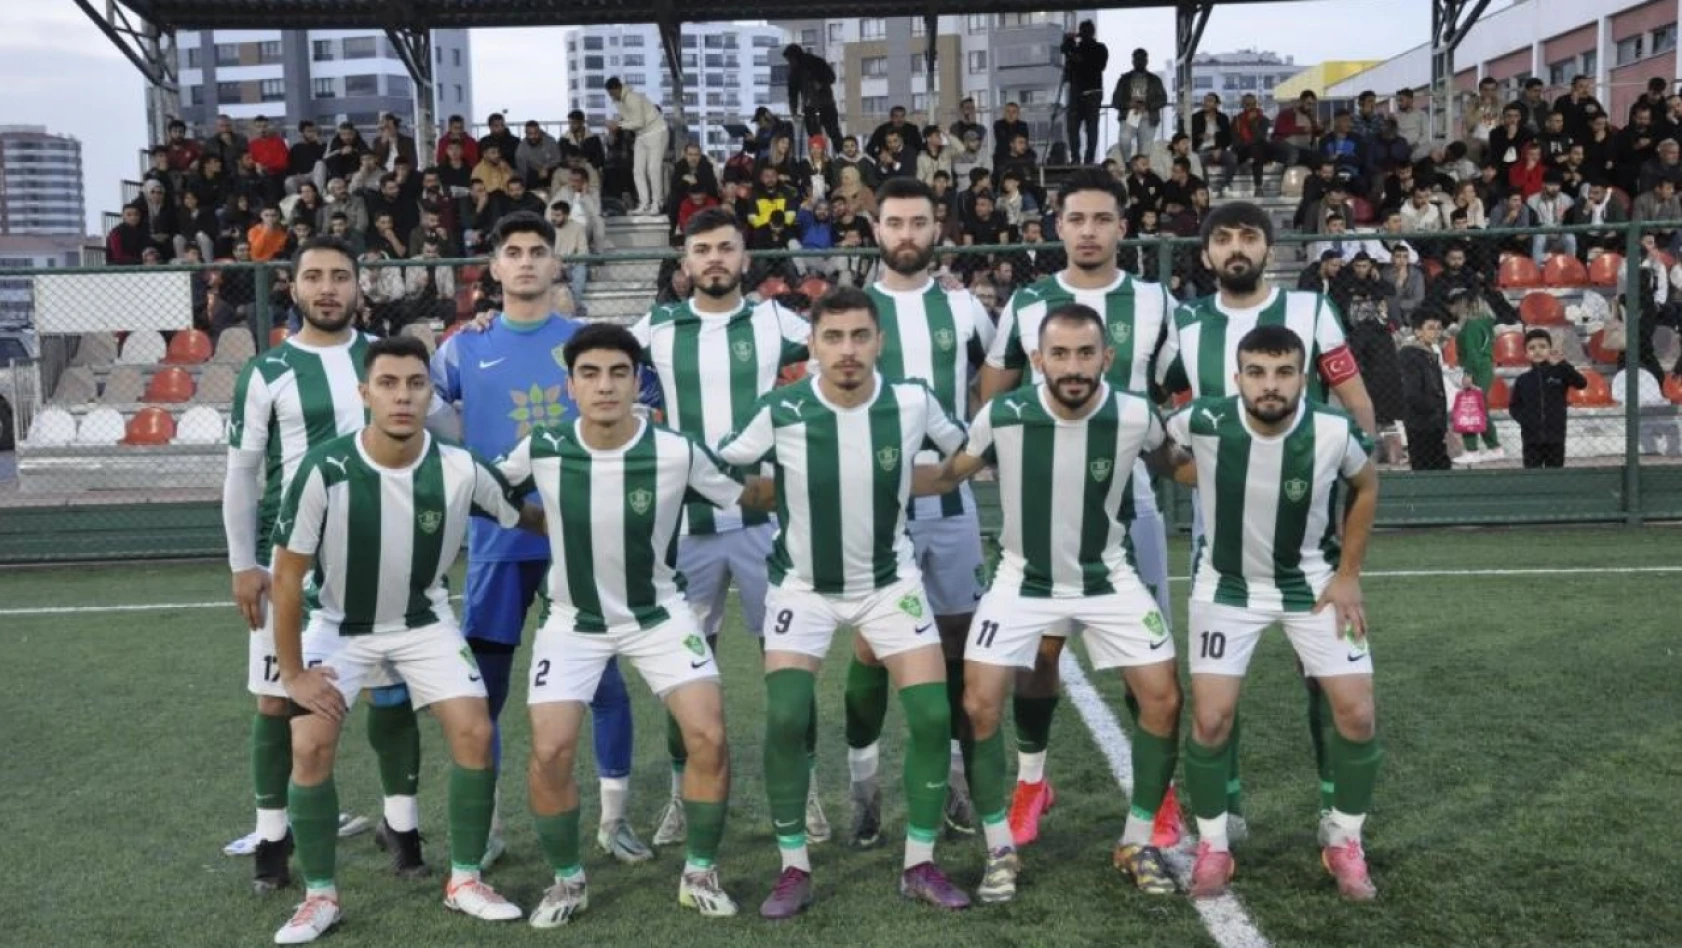 Şekerspor'dan Akkışla'ya büyük fark! 9-0 - Kayseri Amatör Futbol